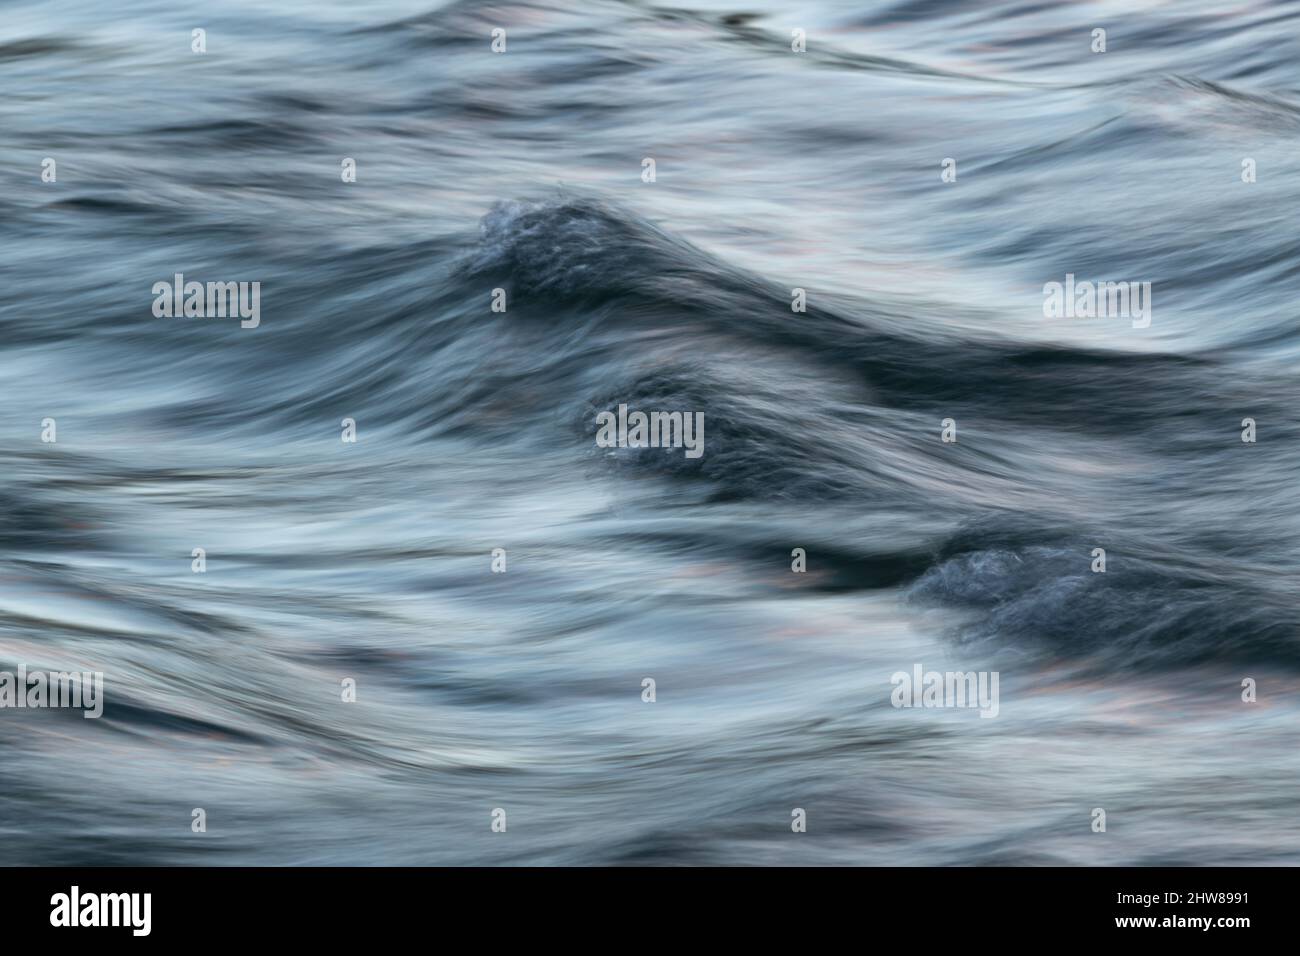 Acqua turbolenta ondulata con superficie setosa a lunga esposizione ed effetto motion blur - paesaggio astratto Foto Stock